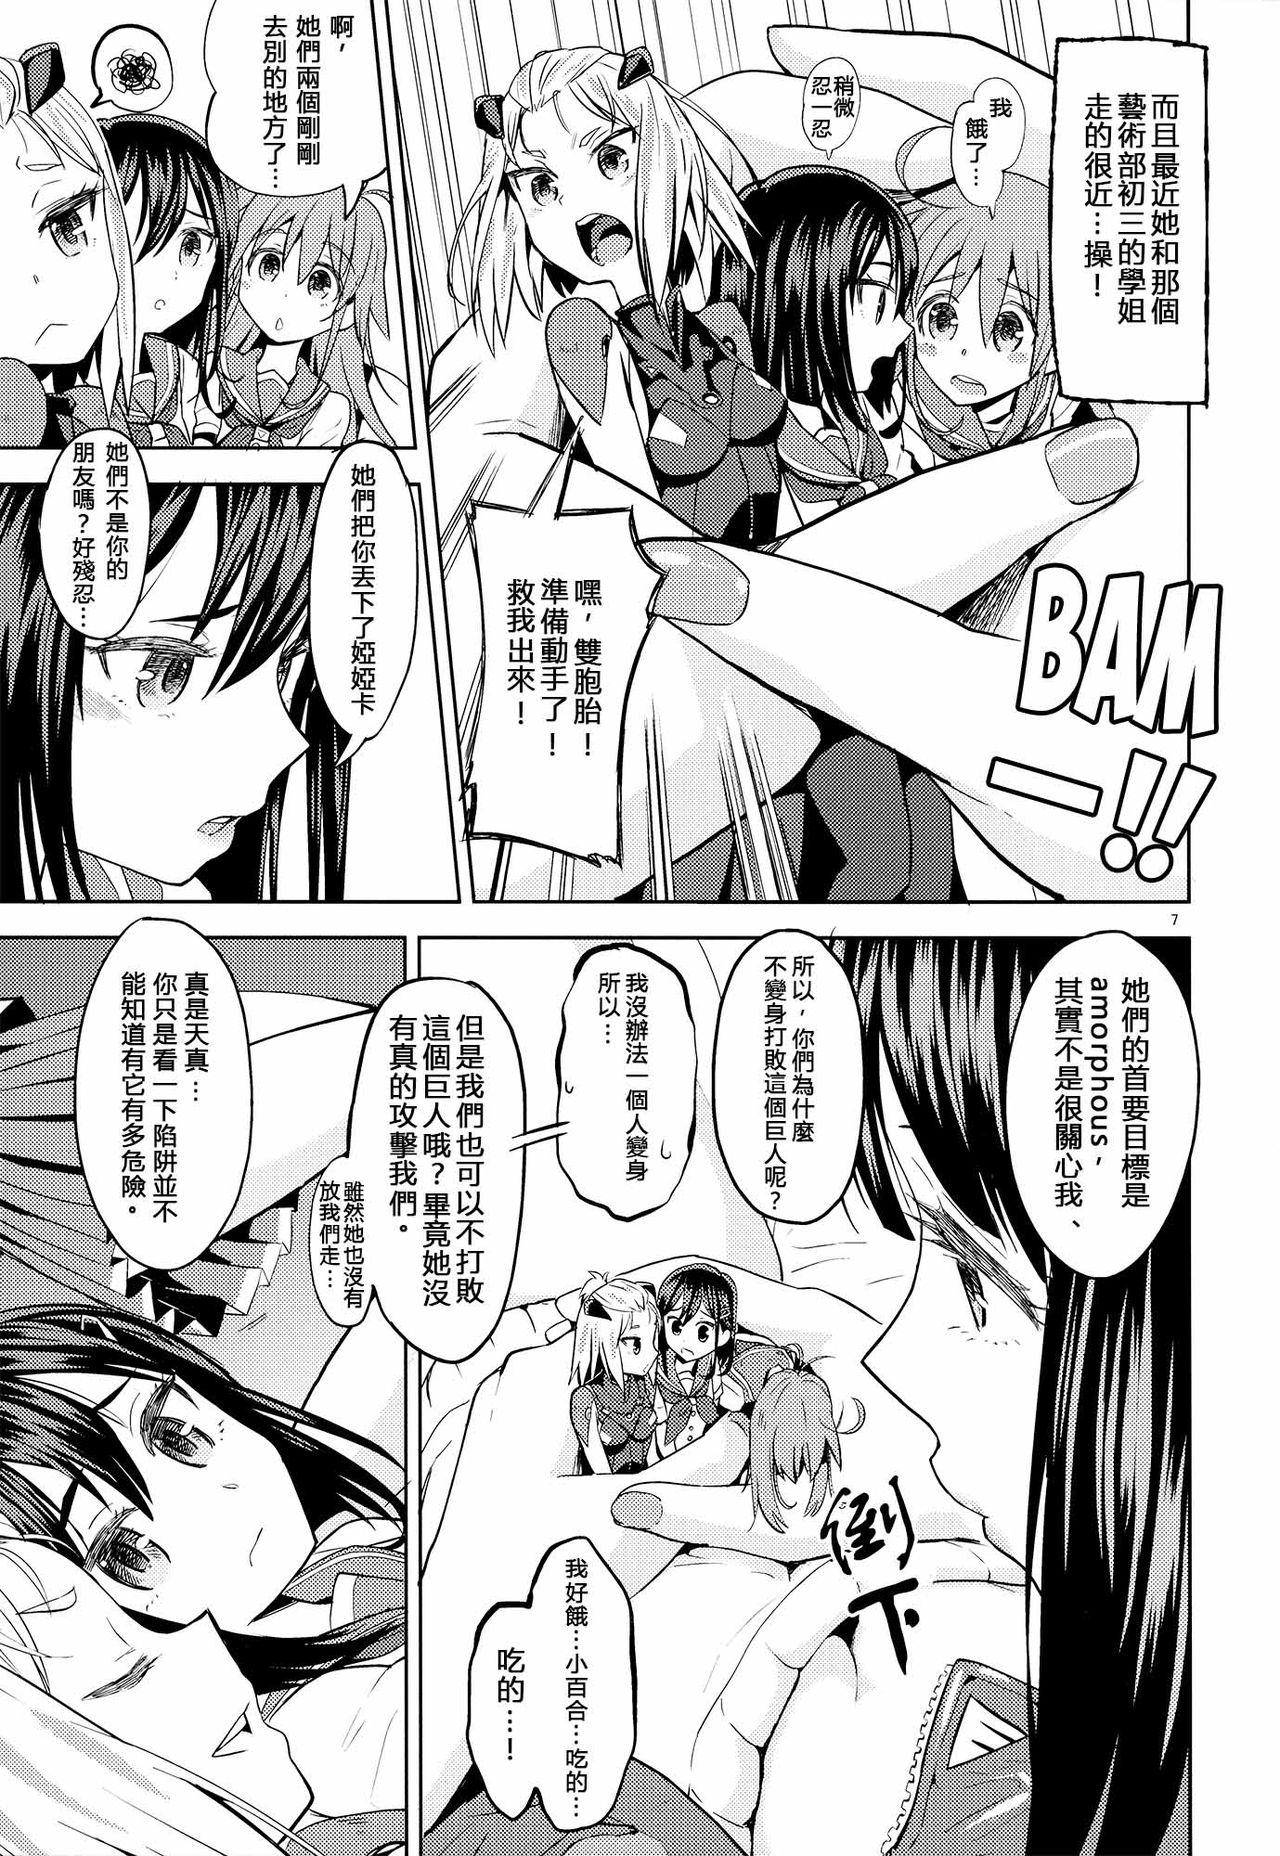 Sex Sore dakara Watashi wa Henshin Dekinai - Flip flappers Seduction - Page 8